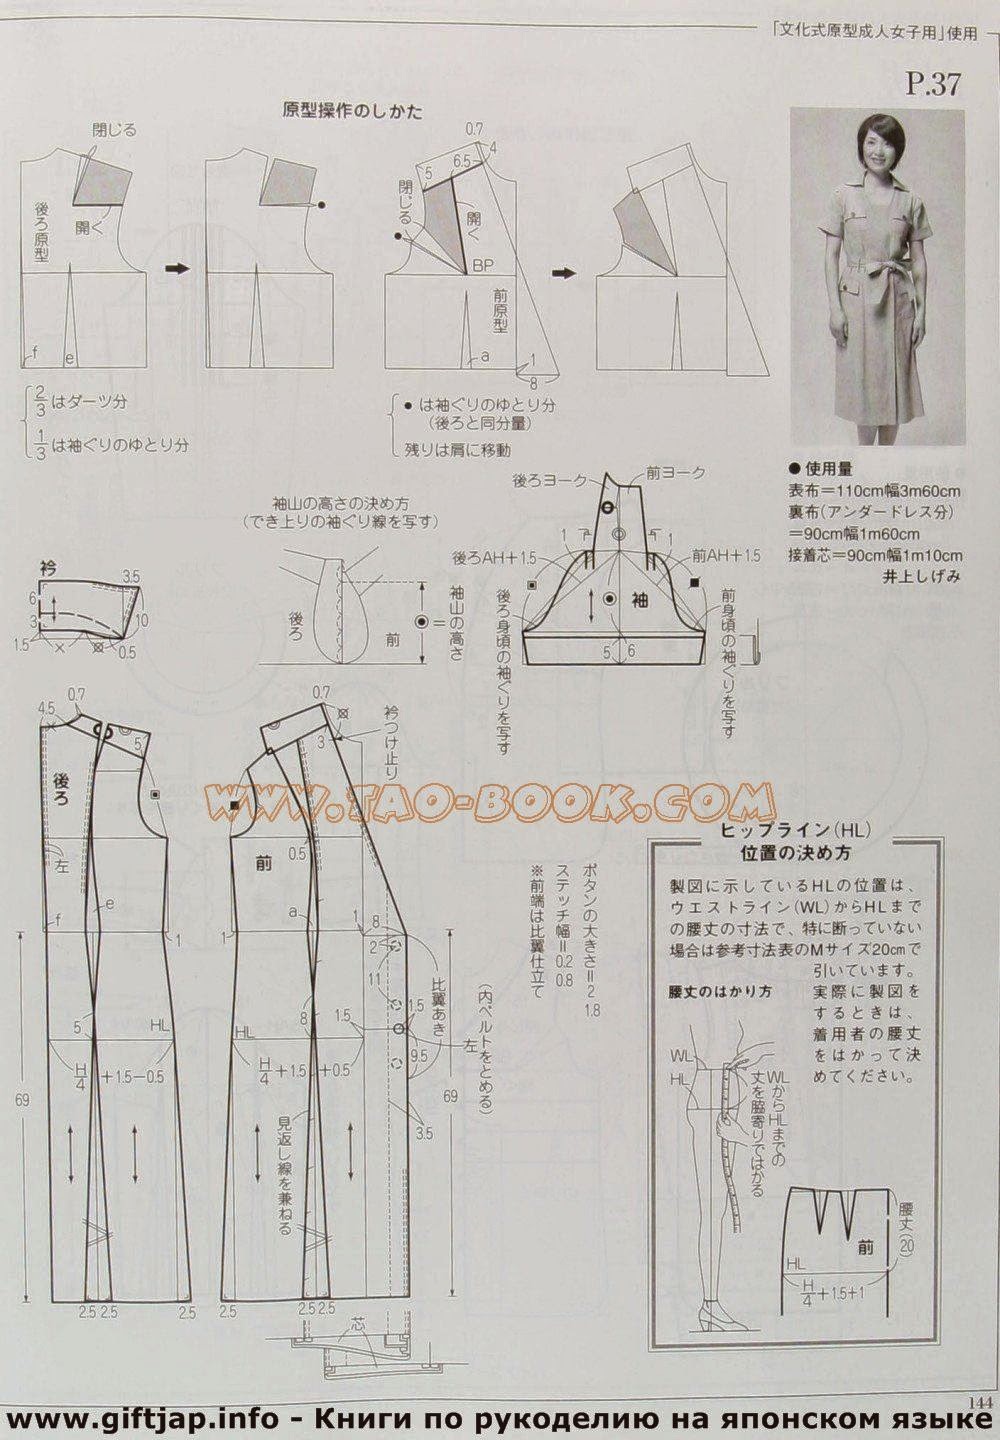 MRS STYLE BOOK JAPON MODELLEME - modelist kitapları